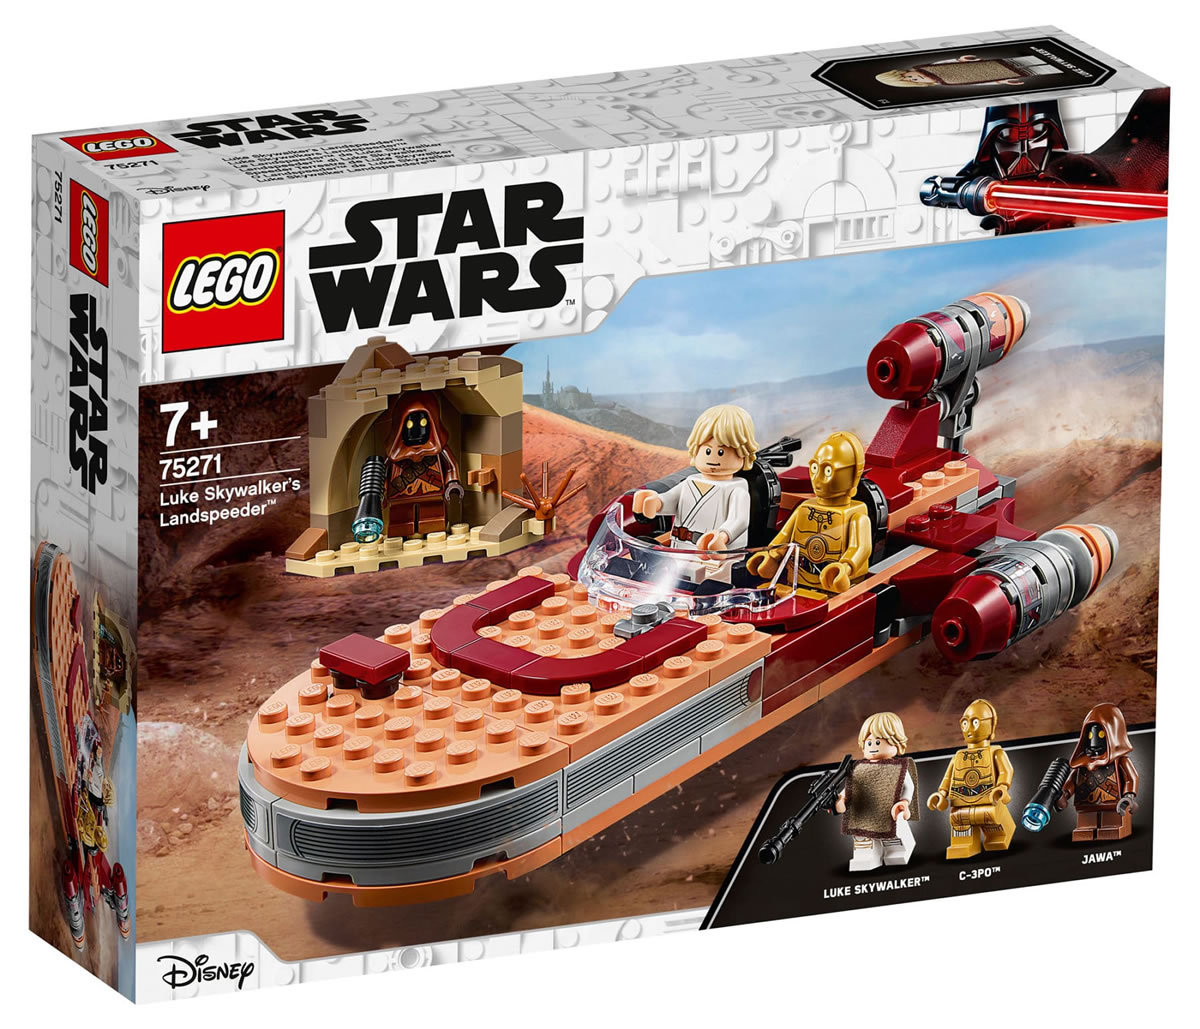 Lego Star Wars 2020  sélection de Legos anciens et nouveaux